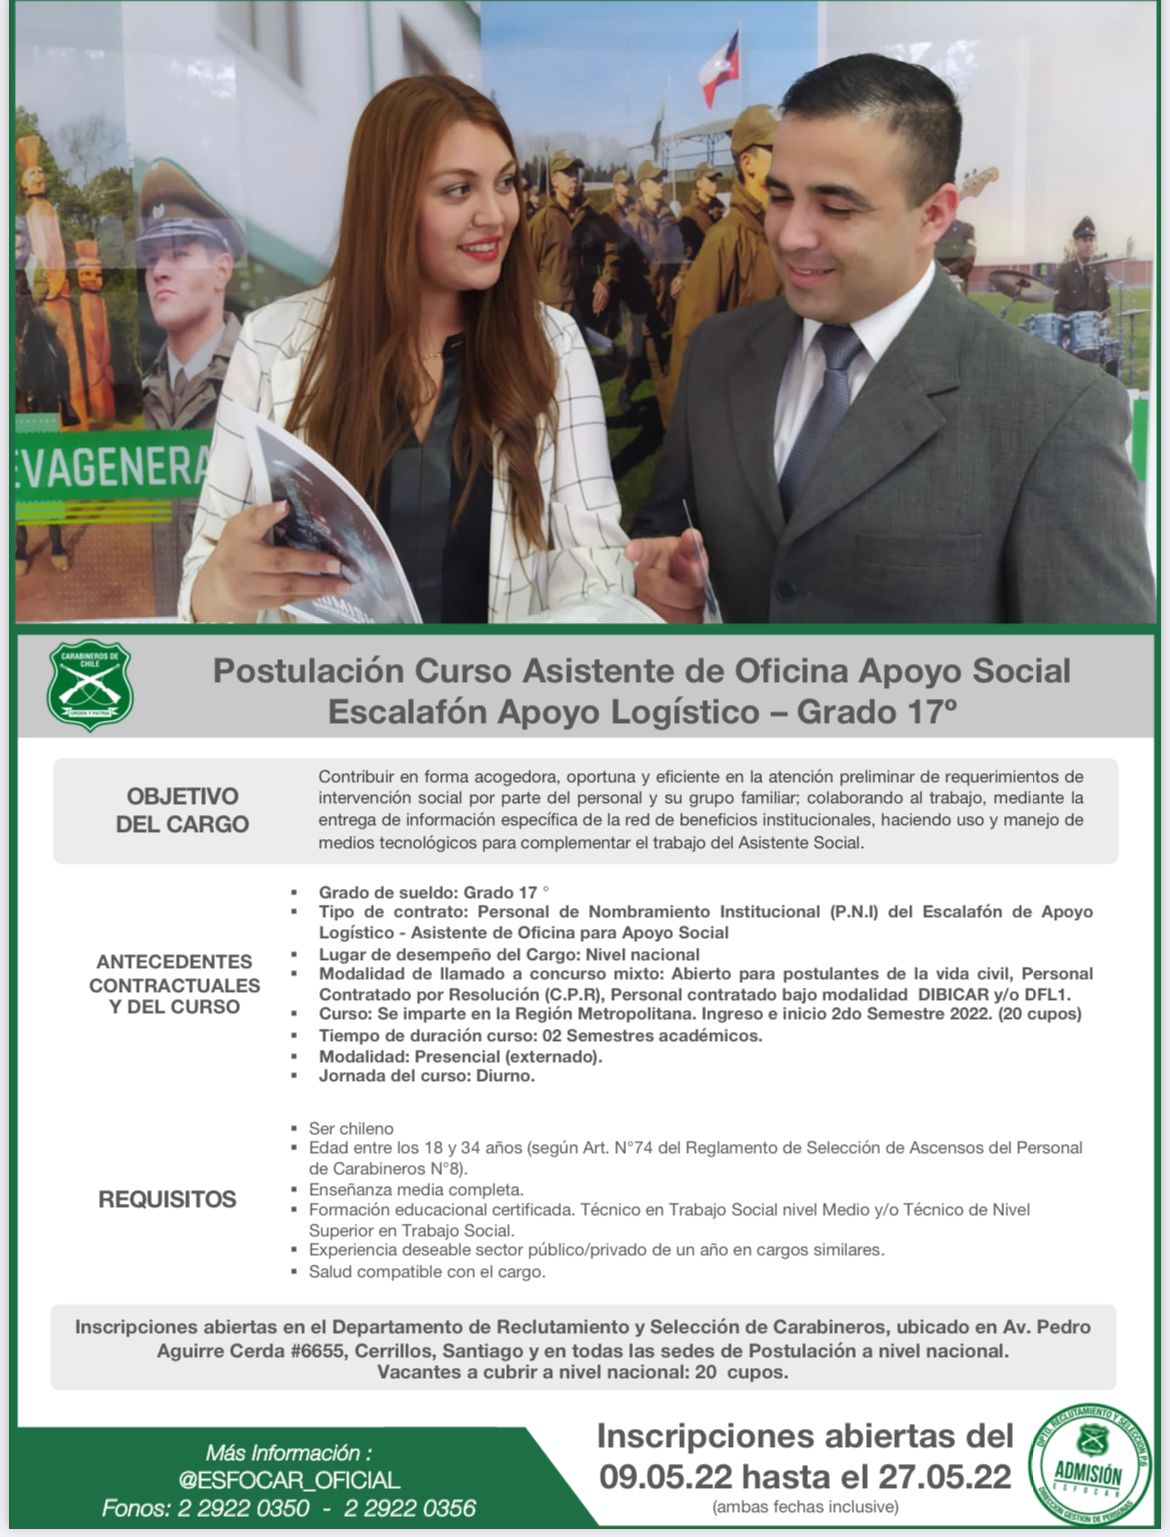 ACONCAGUA: Oficina de postulaciones de Aconcagua de Carabineros inició admisión para técnicos en Trabajo Social